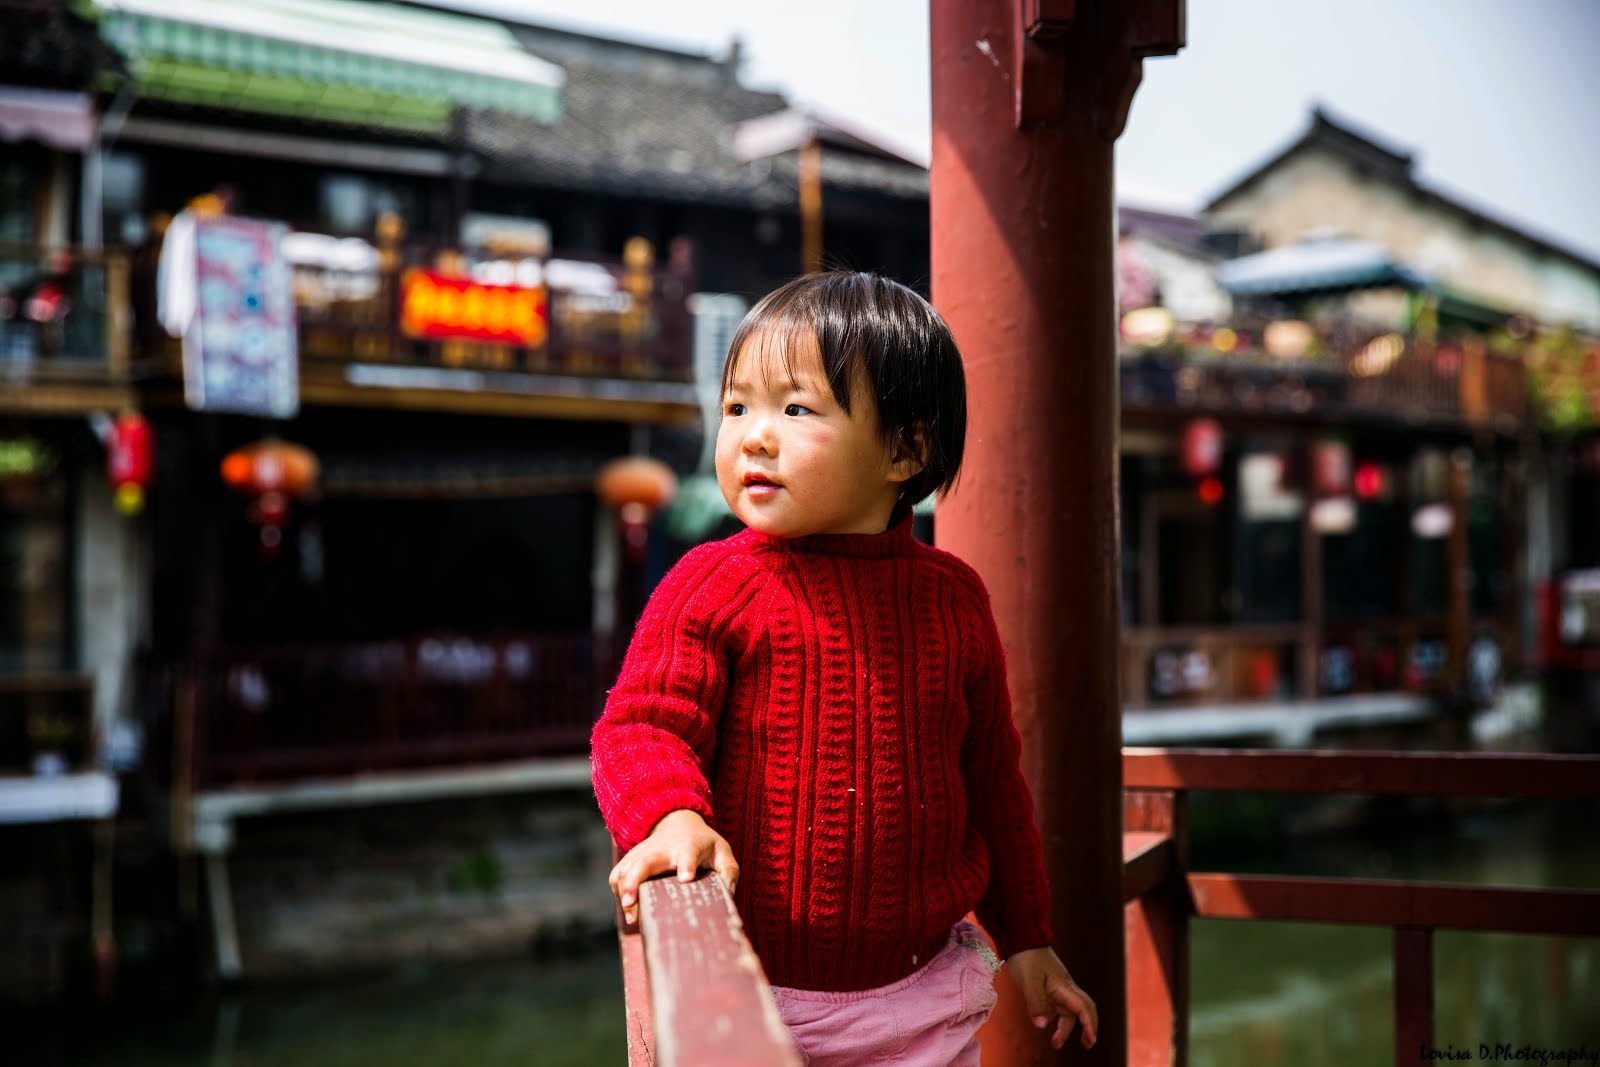 The little girl from Zhujiajio